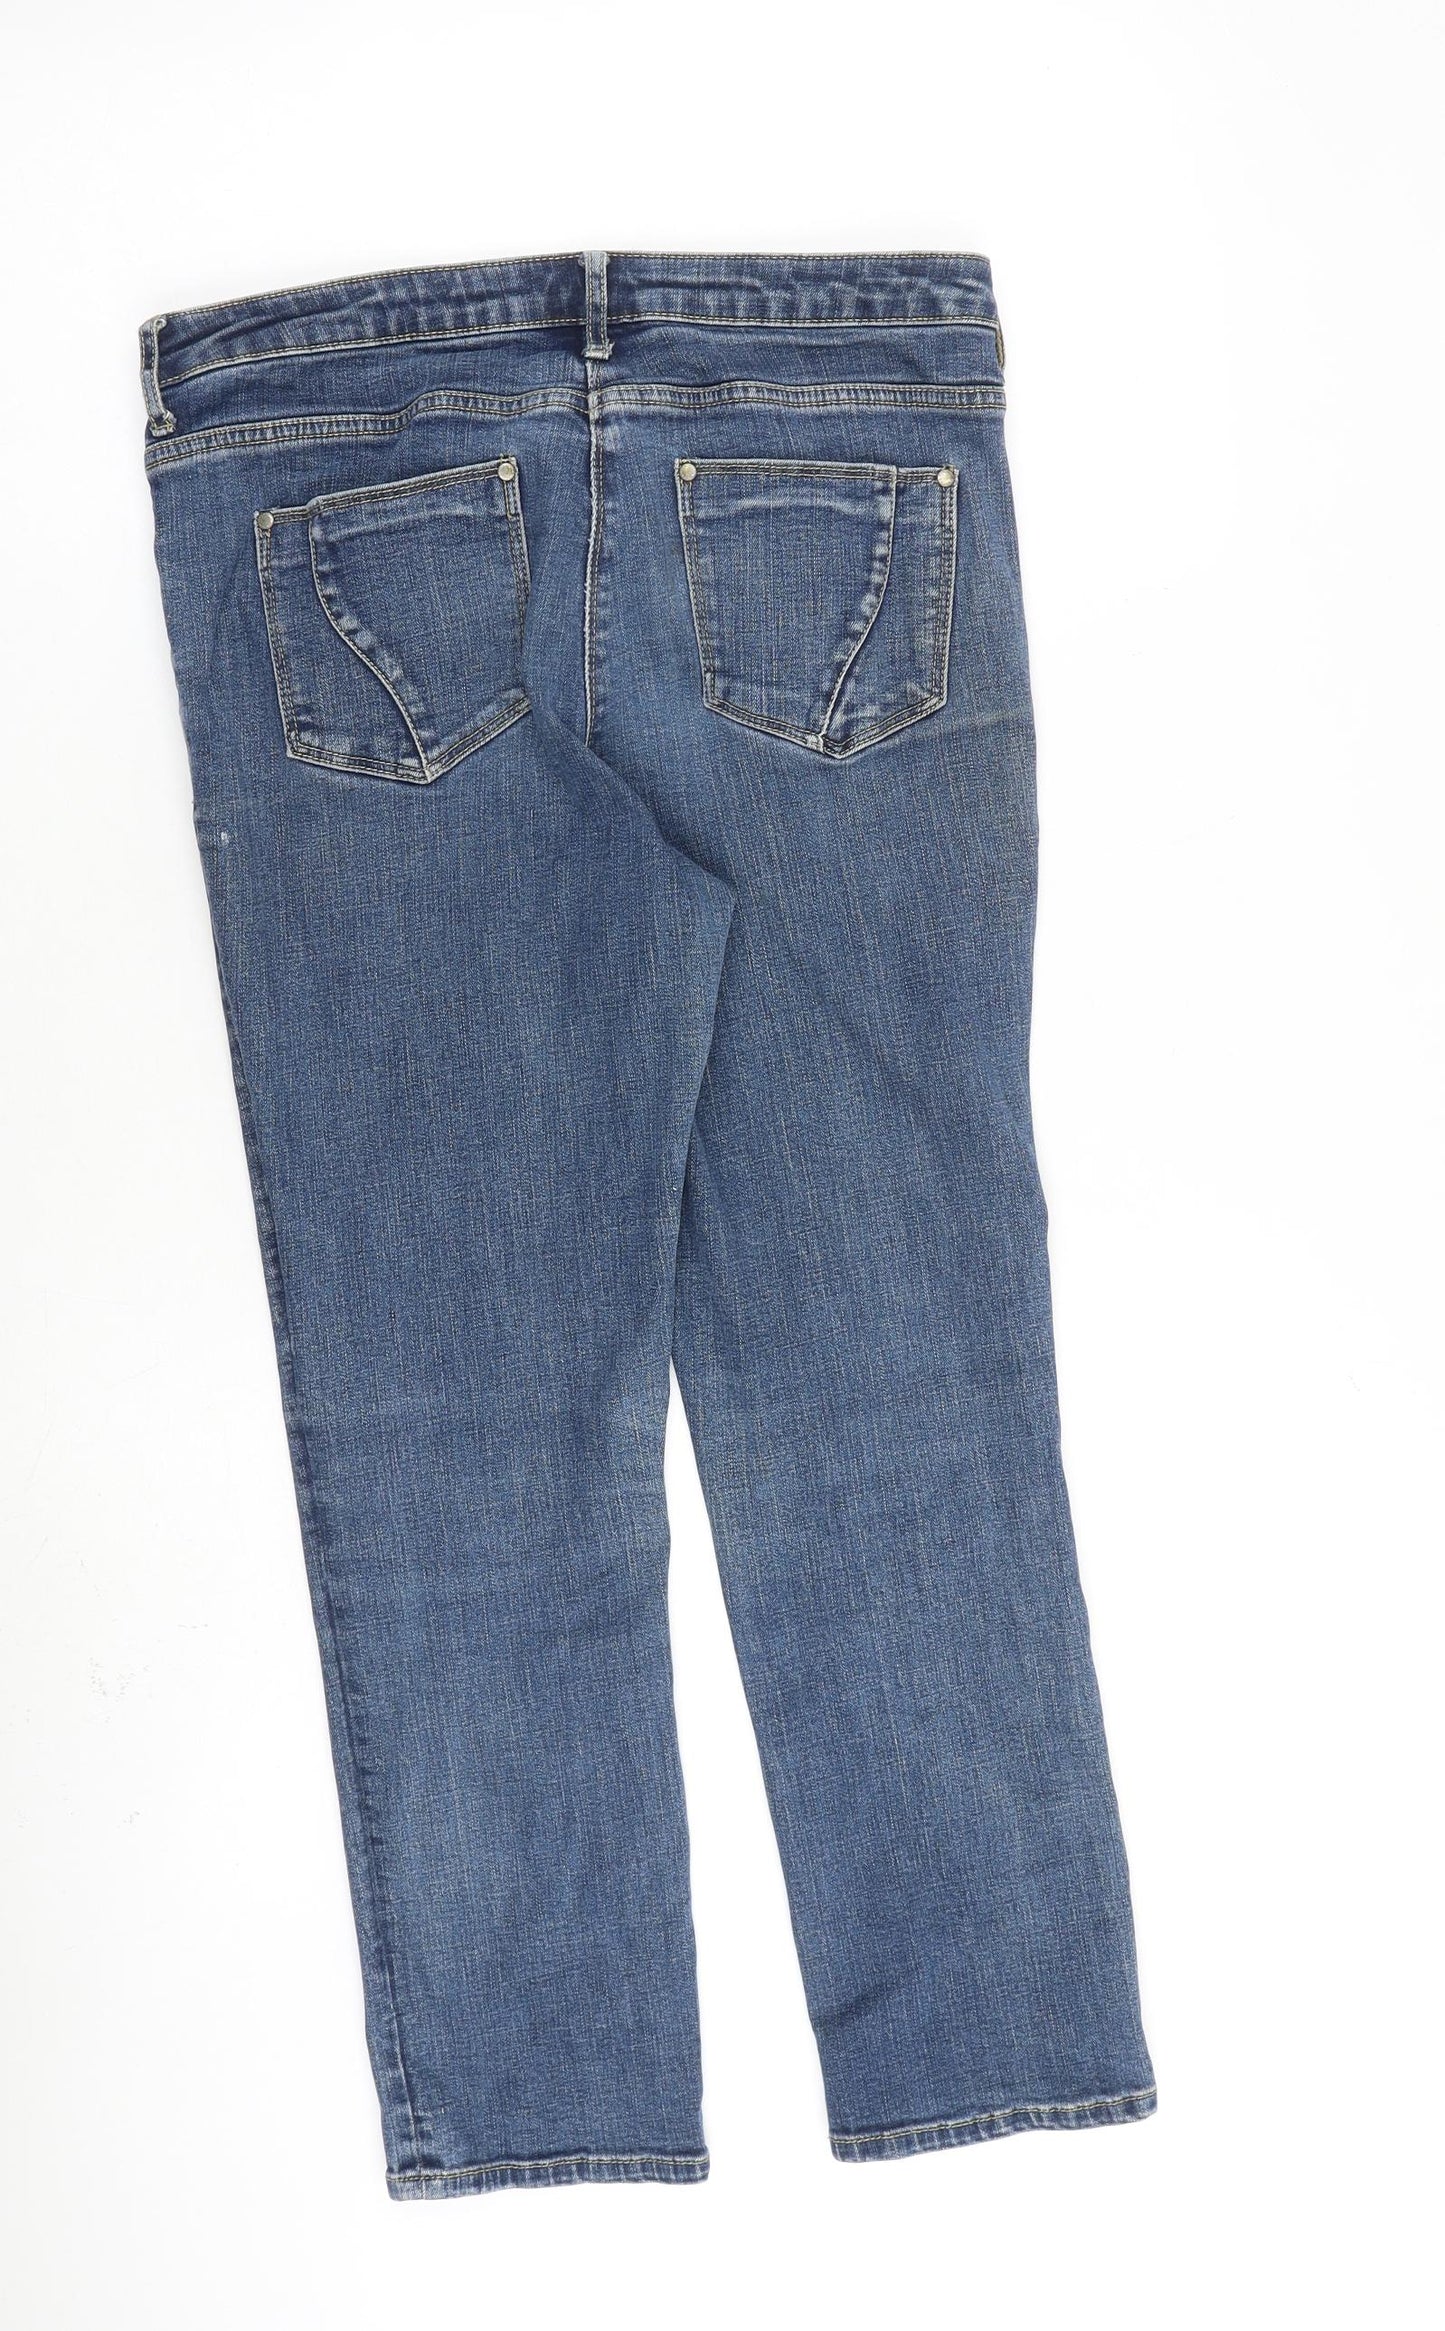 John Rocha Womens Blue Cotton Straight Jeans Size 10 L25 in Regular Zip